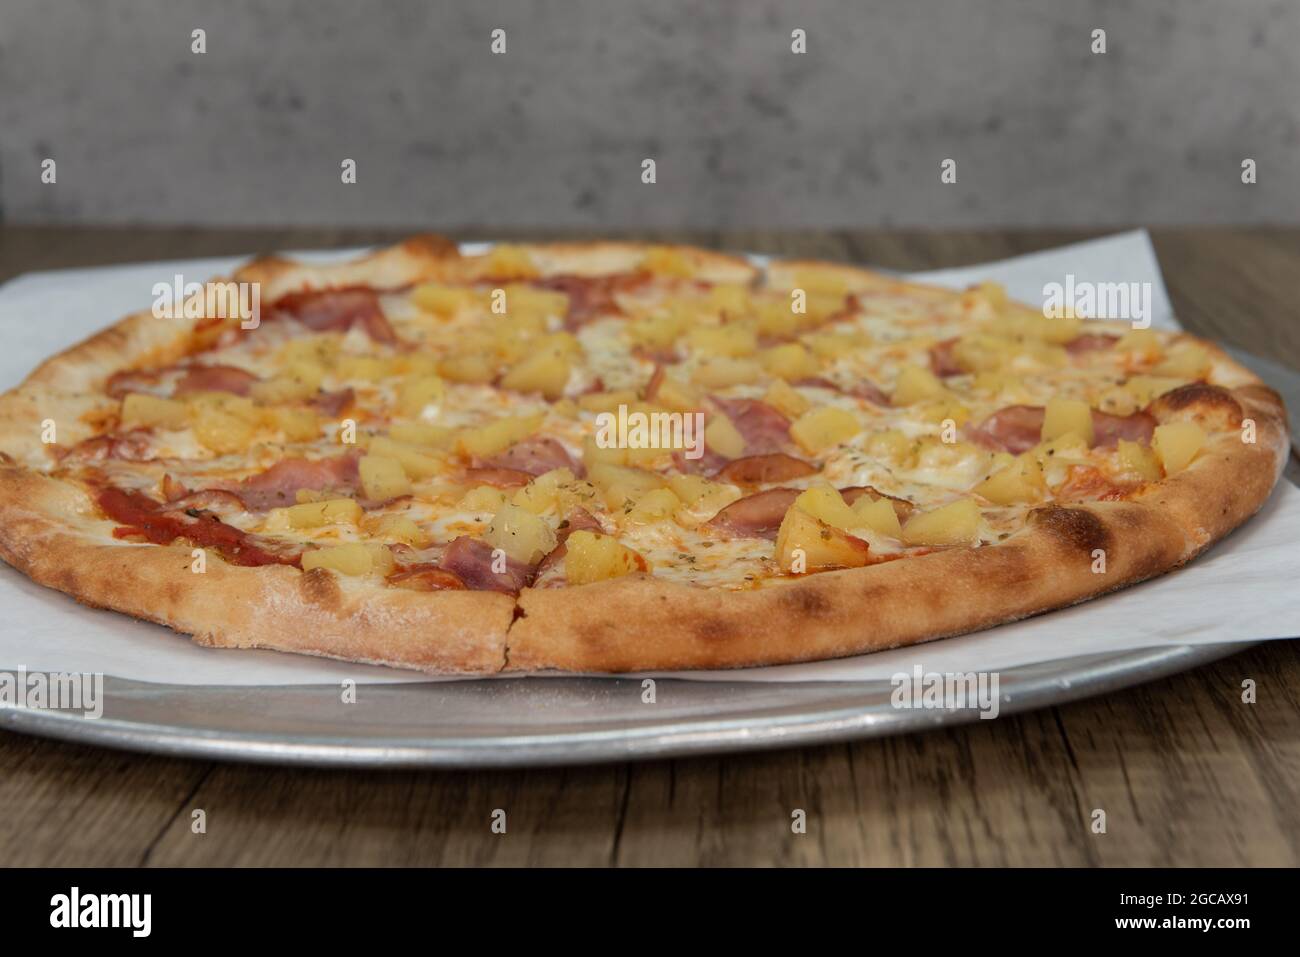 Pizza hawaiana all'ananas con farciture di verdure e crosta croccante per un pasto completo in famiglia. Foto Stock